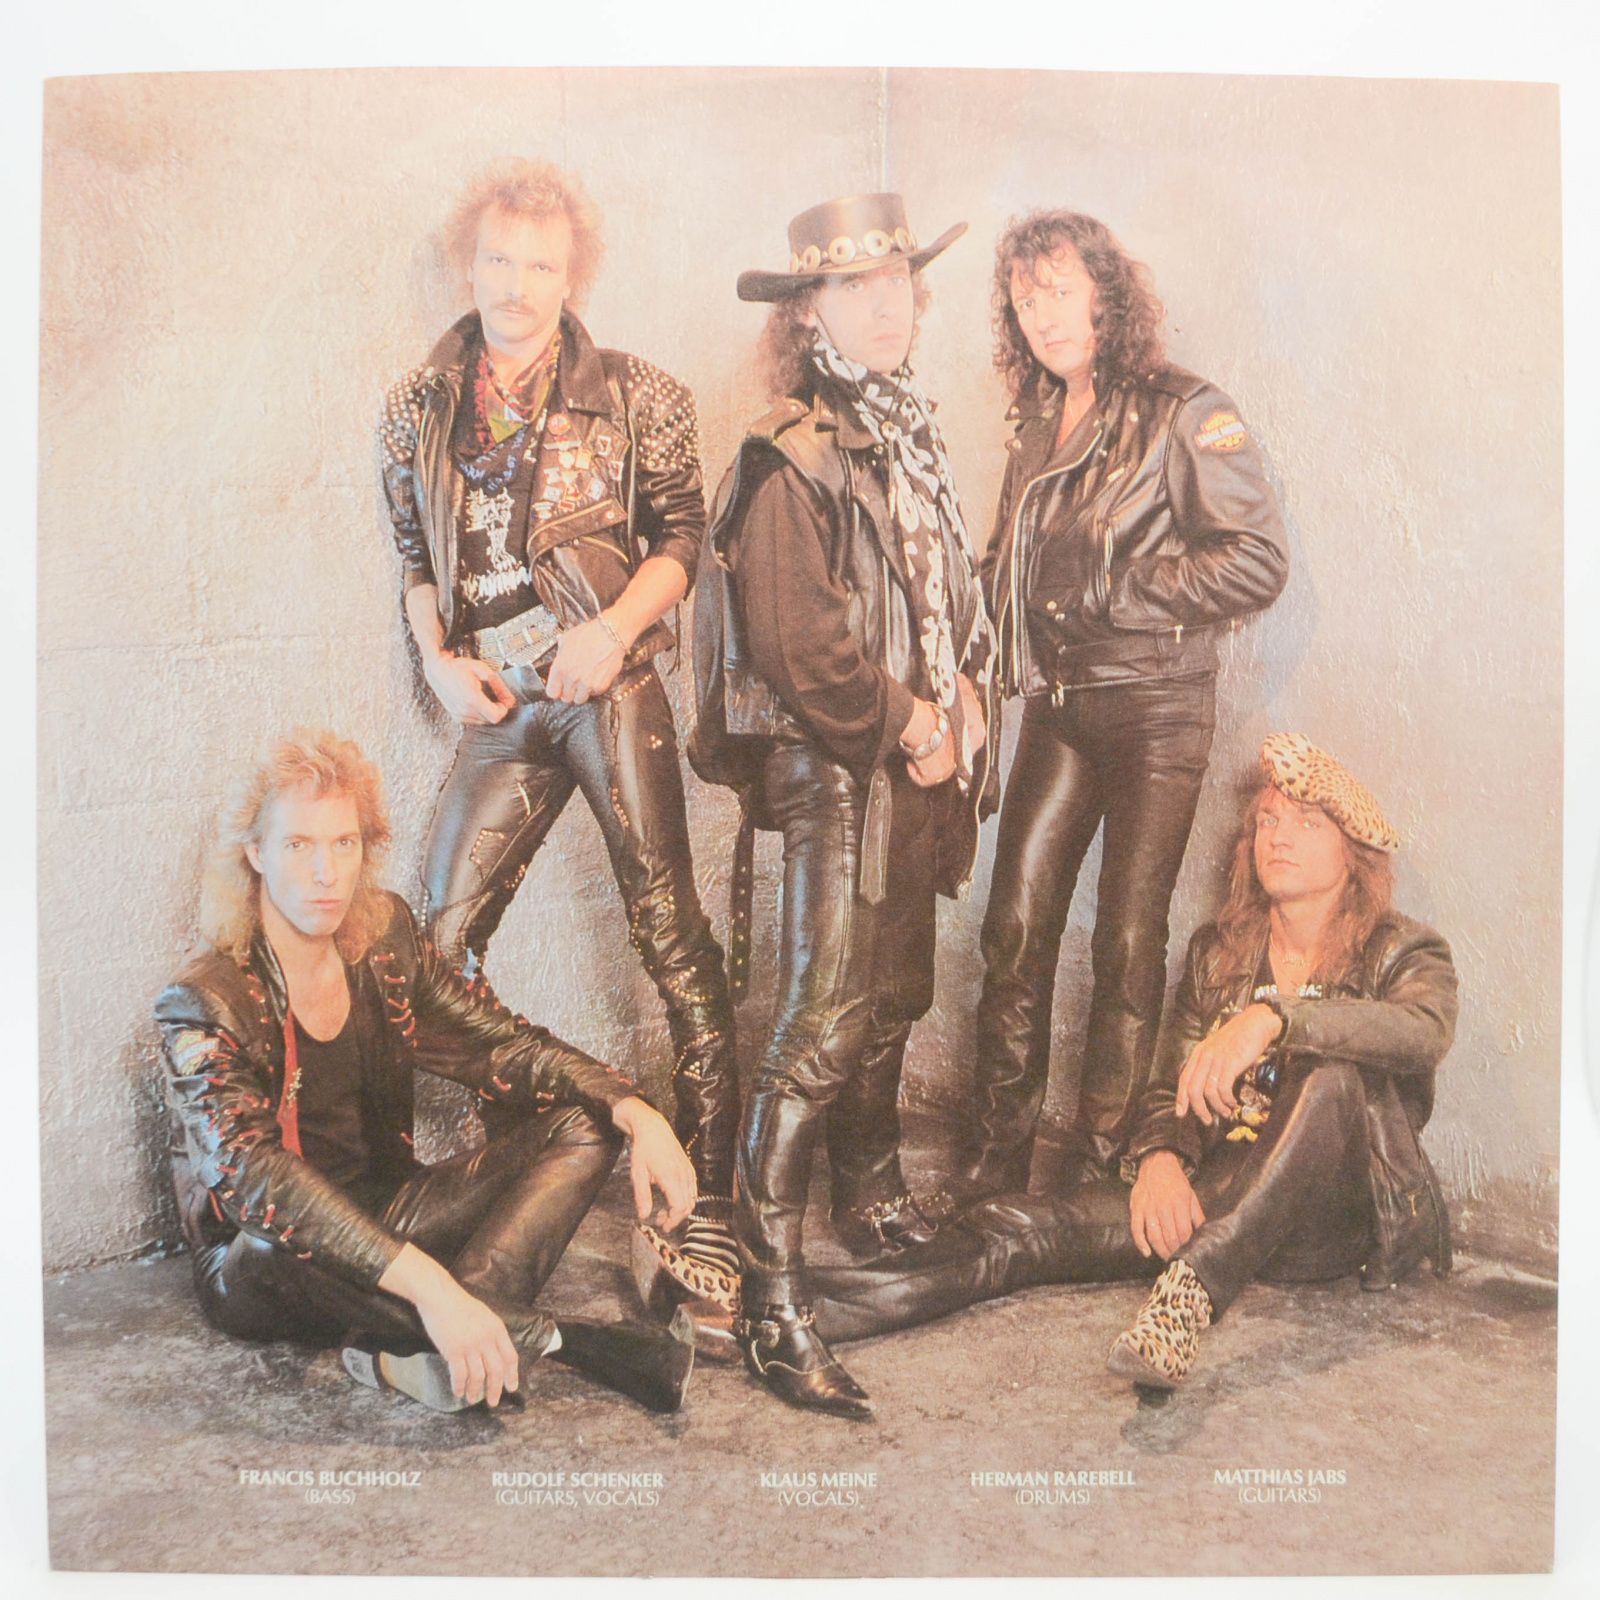 Scorpions — Best Of Rockers N' Ballads, 1989